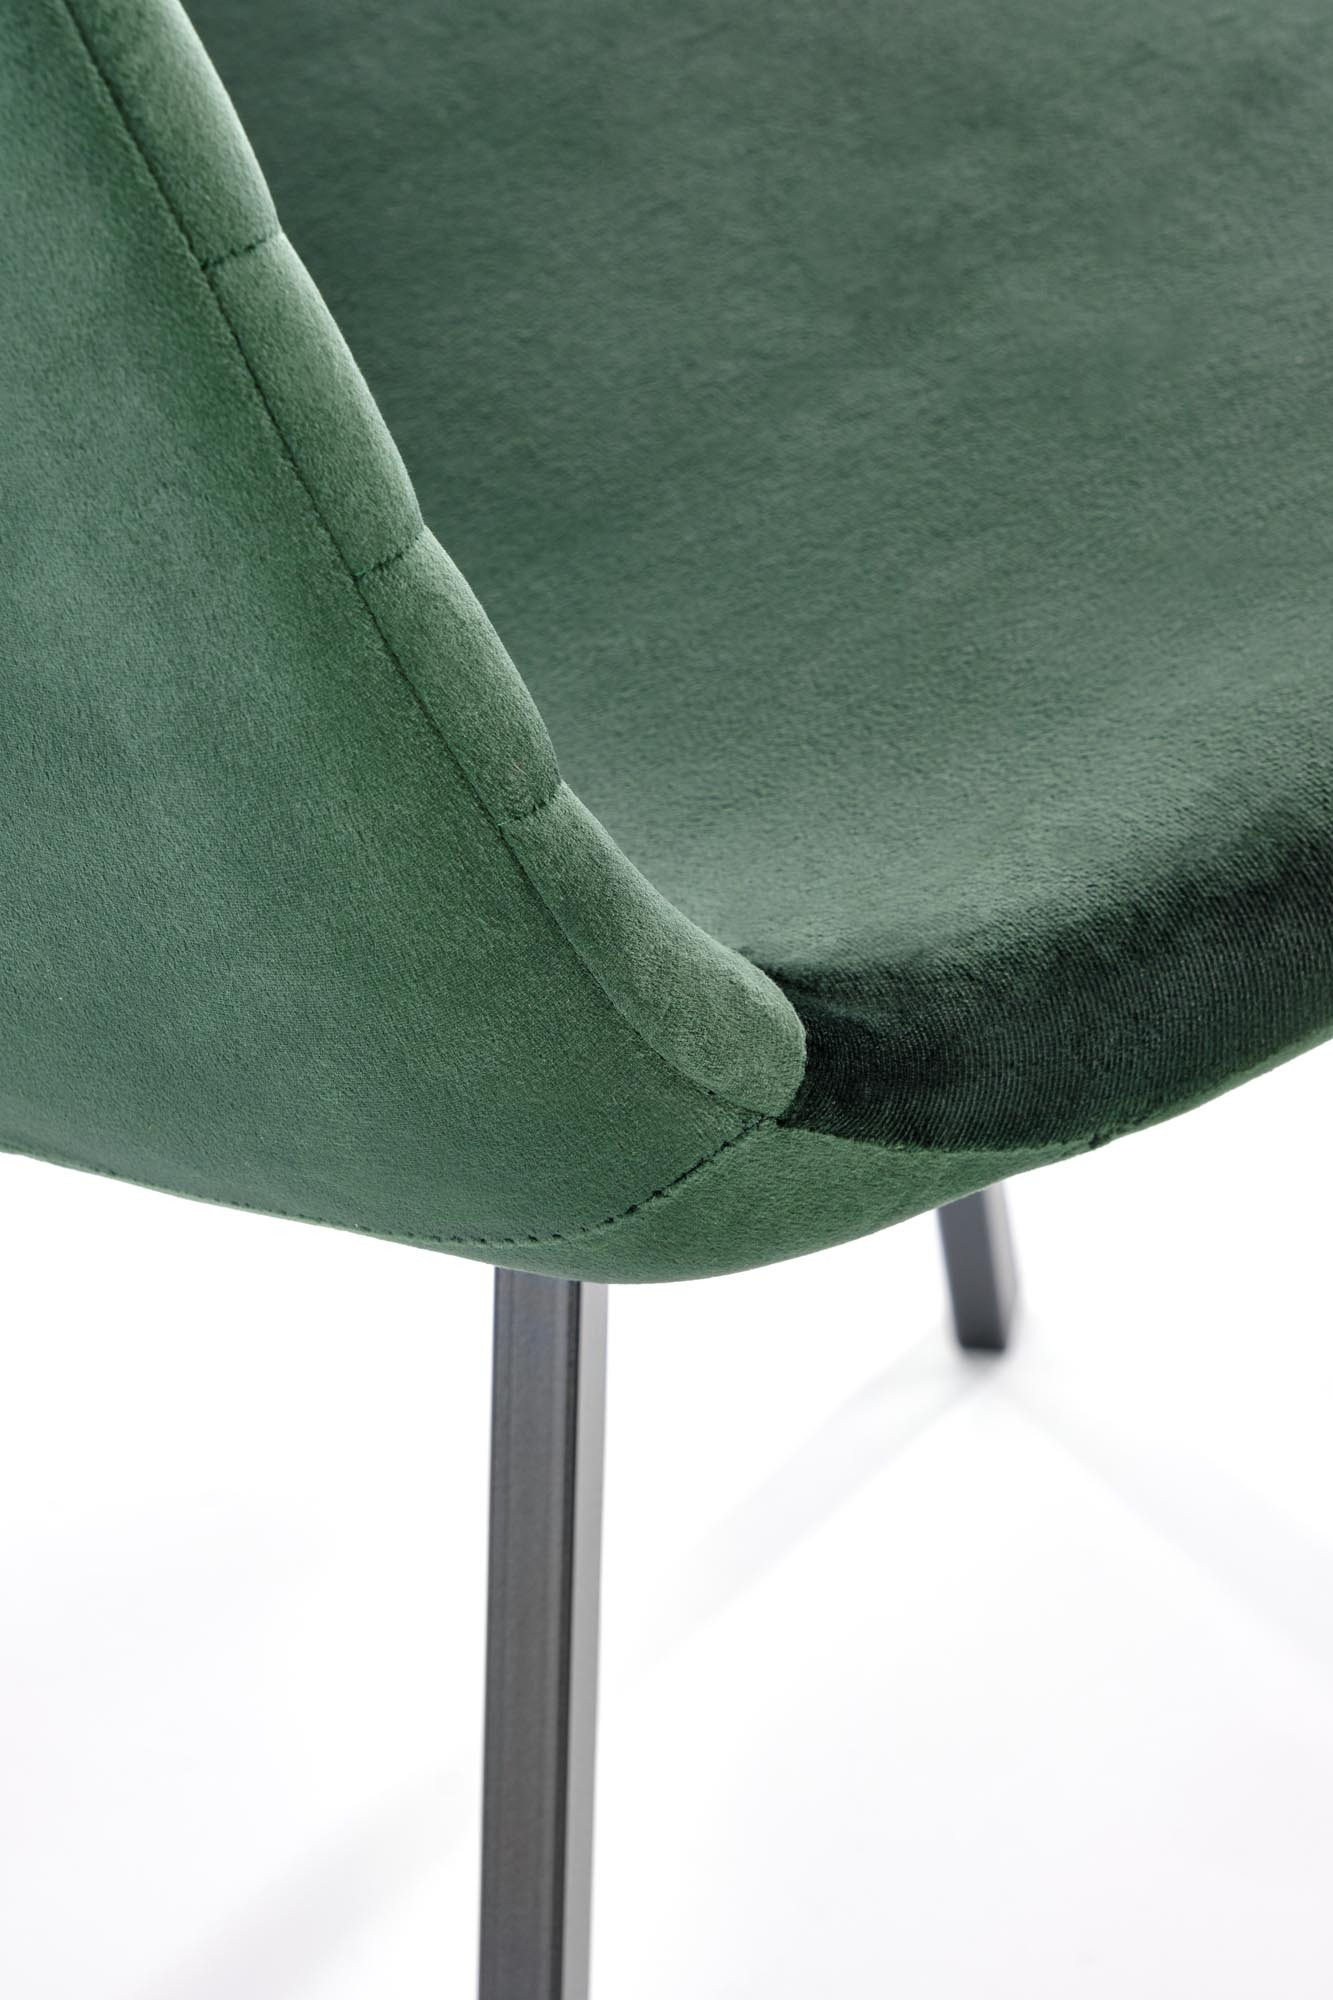 K462 krzesło ciemny zielony